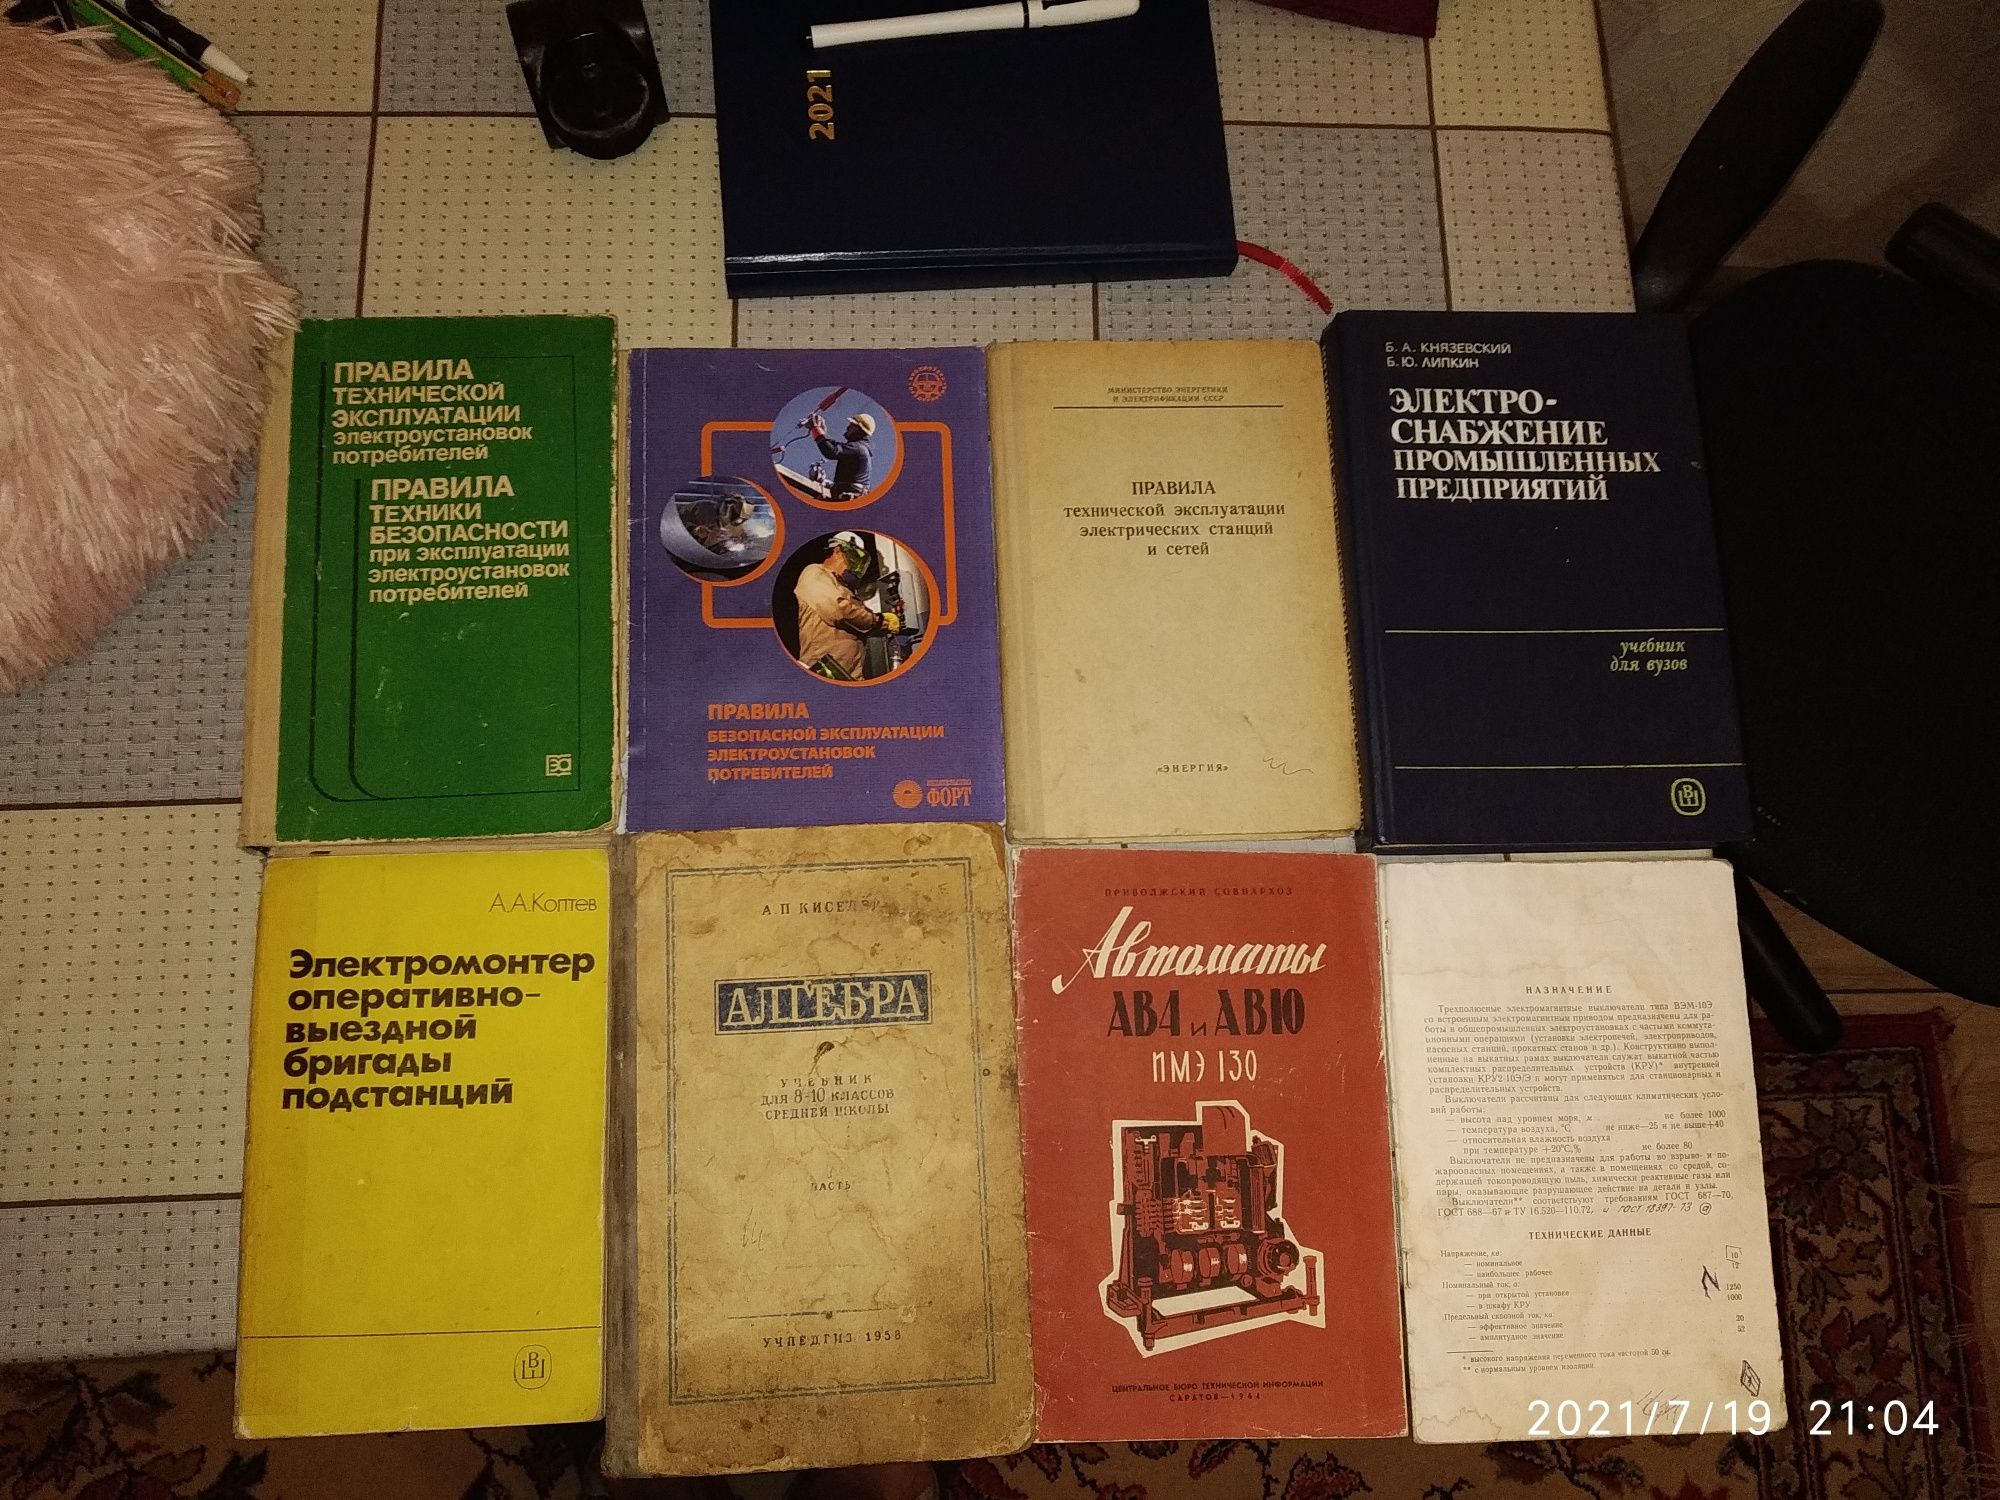 Продам книги Валентина Пикуля,прочех авторов,есть технические издания